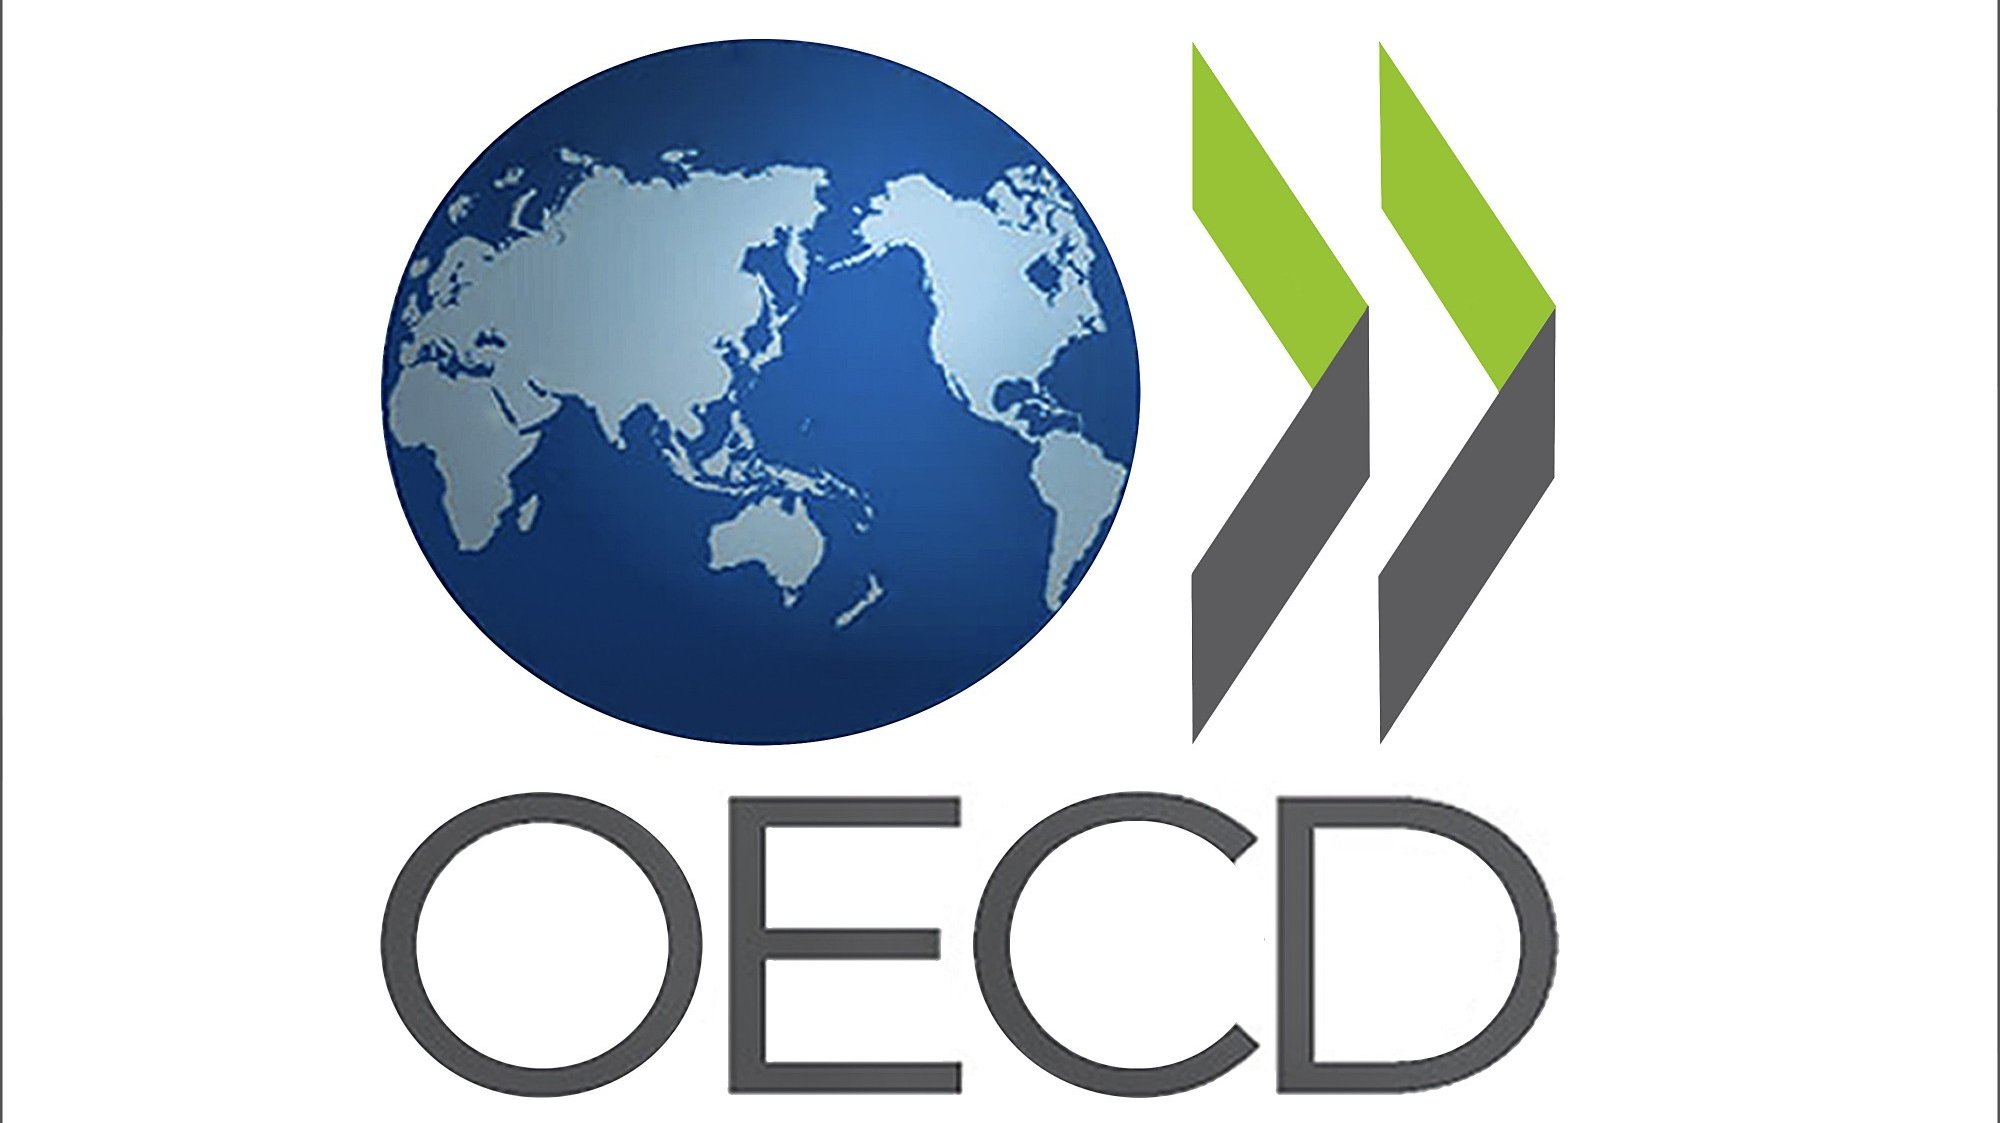 A organização contabiliza que os governos da OCDE tenham pedido quase 15 biliões de euros aos mercados no ano passado, o representa perto de 29% do Produto Interno Bruto